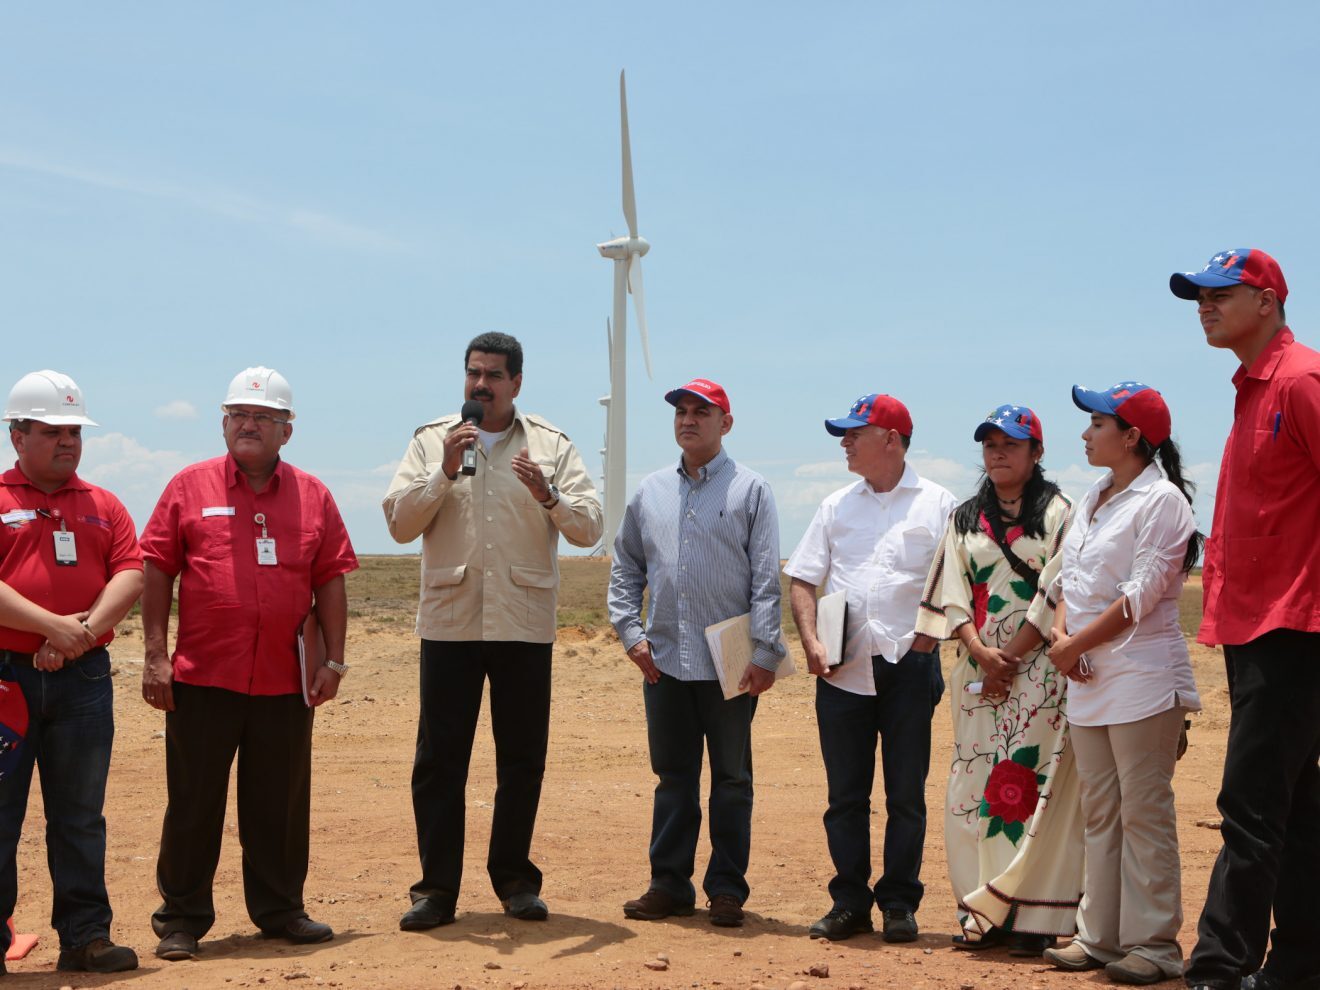 <p>Venezuelan President Nicolás Maduro at the La Guajira wind farm in Zulia State in 2013. (Image: <a href="http://www.minci.gob.ve/presidente-maduro-visito-parque-eolico-la-guajira/">Ministry of Communication of Venezuela)</a></p>